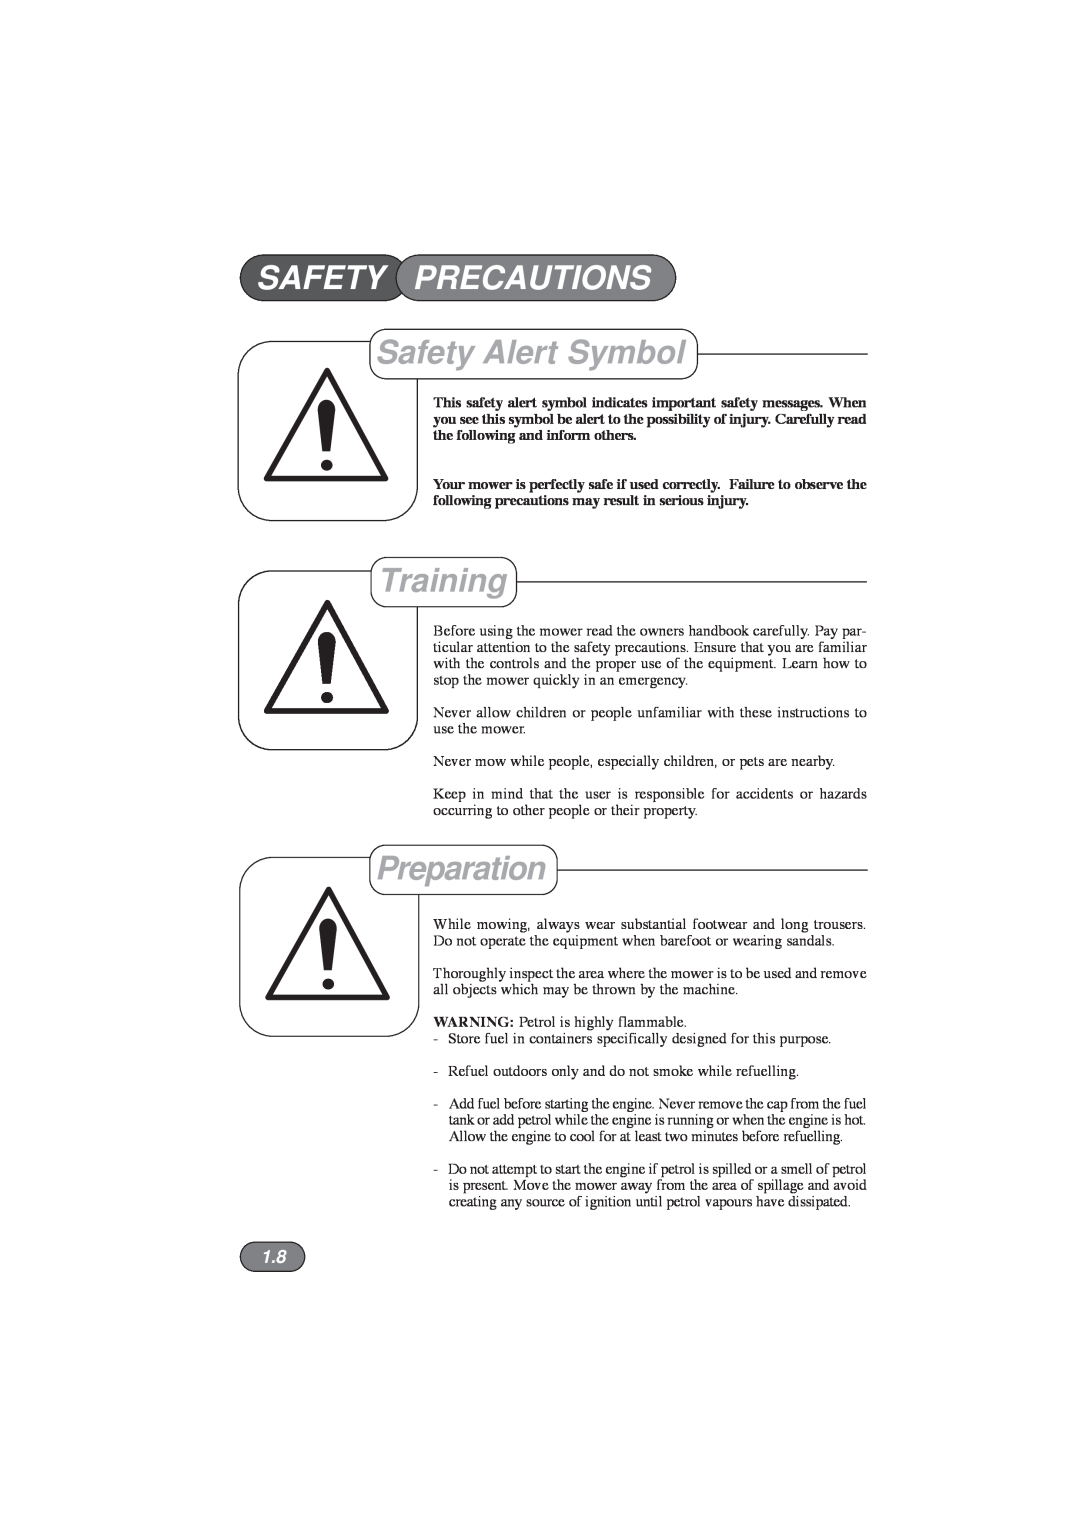 Hayter Mowers 435E, 432E, 434E, 433E manual Safety Precautions, Safety Alert Symbol, Training, Preparation 